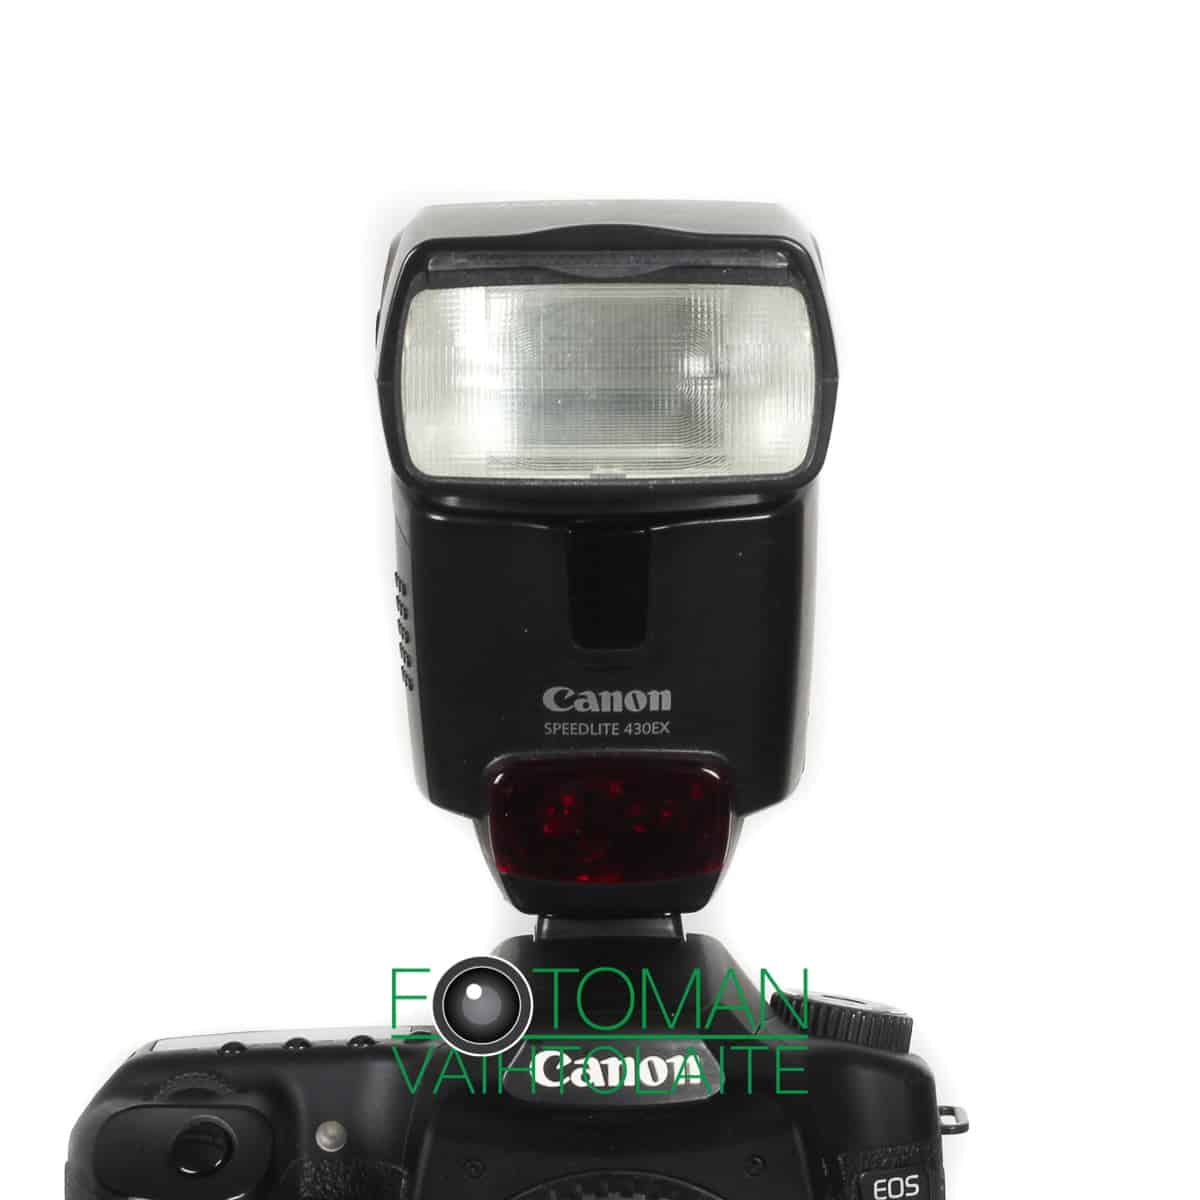 MYYTY Käytetty Canon Speedlite 430EX salamalaite